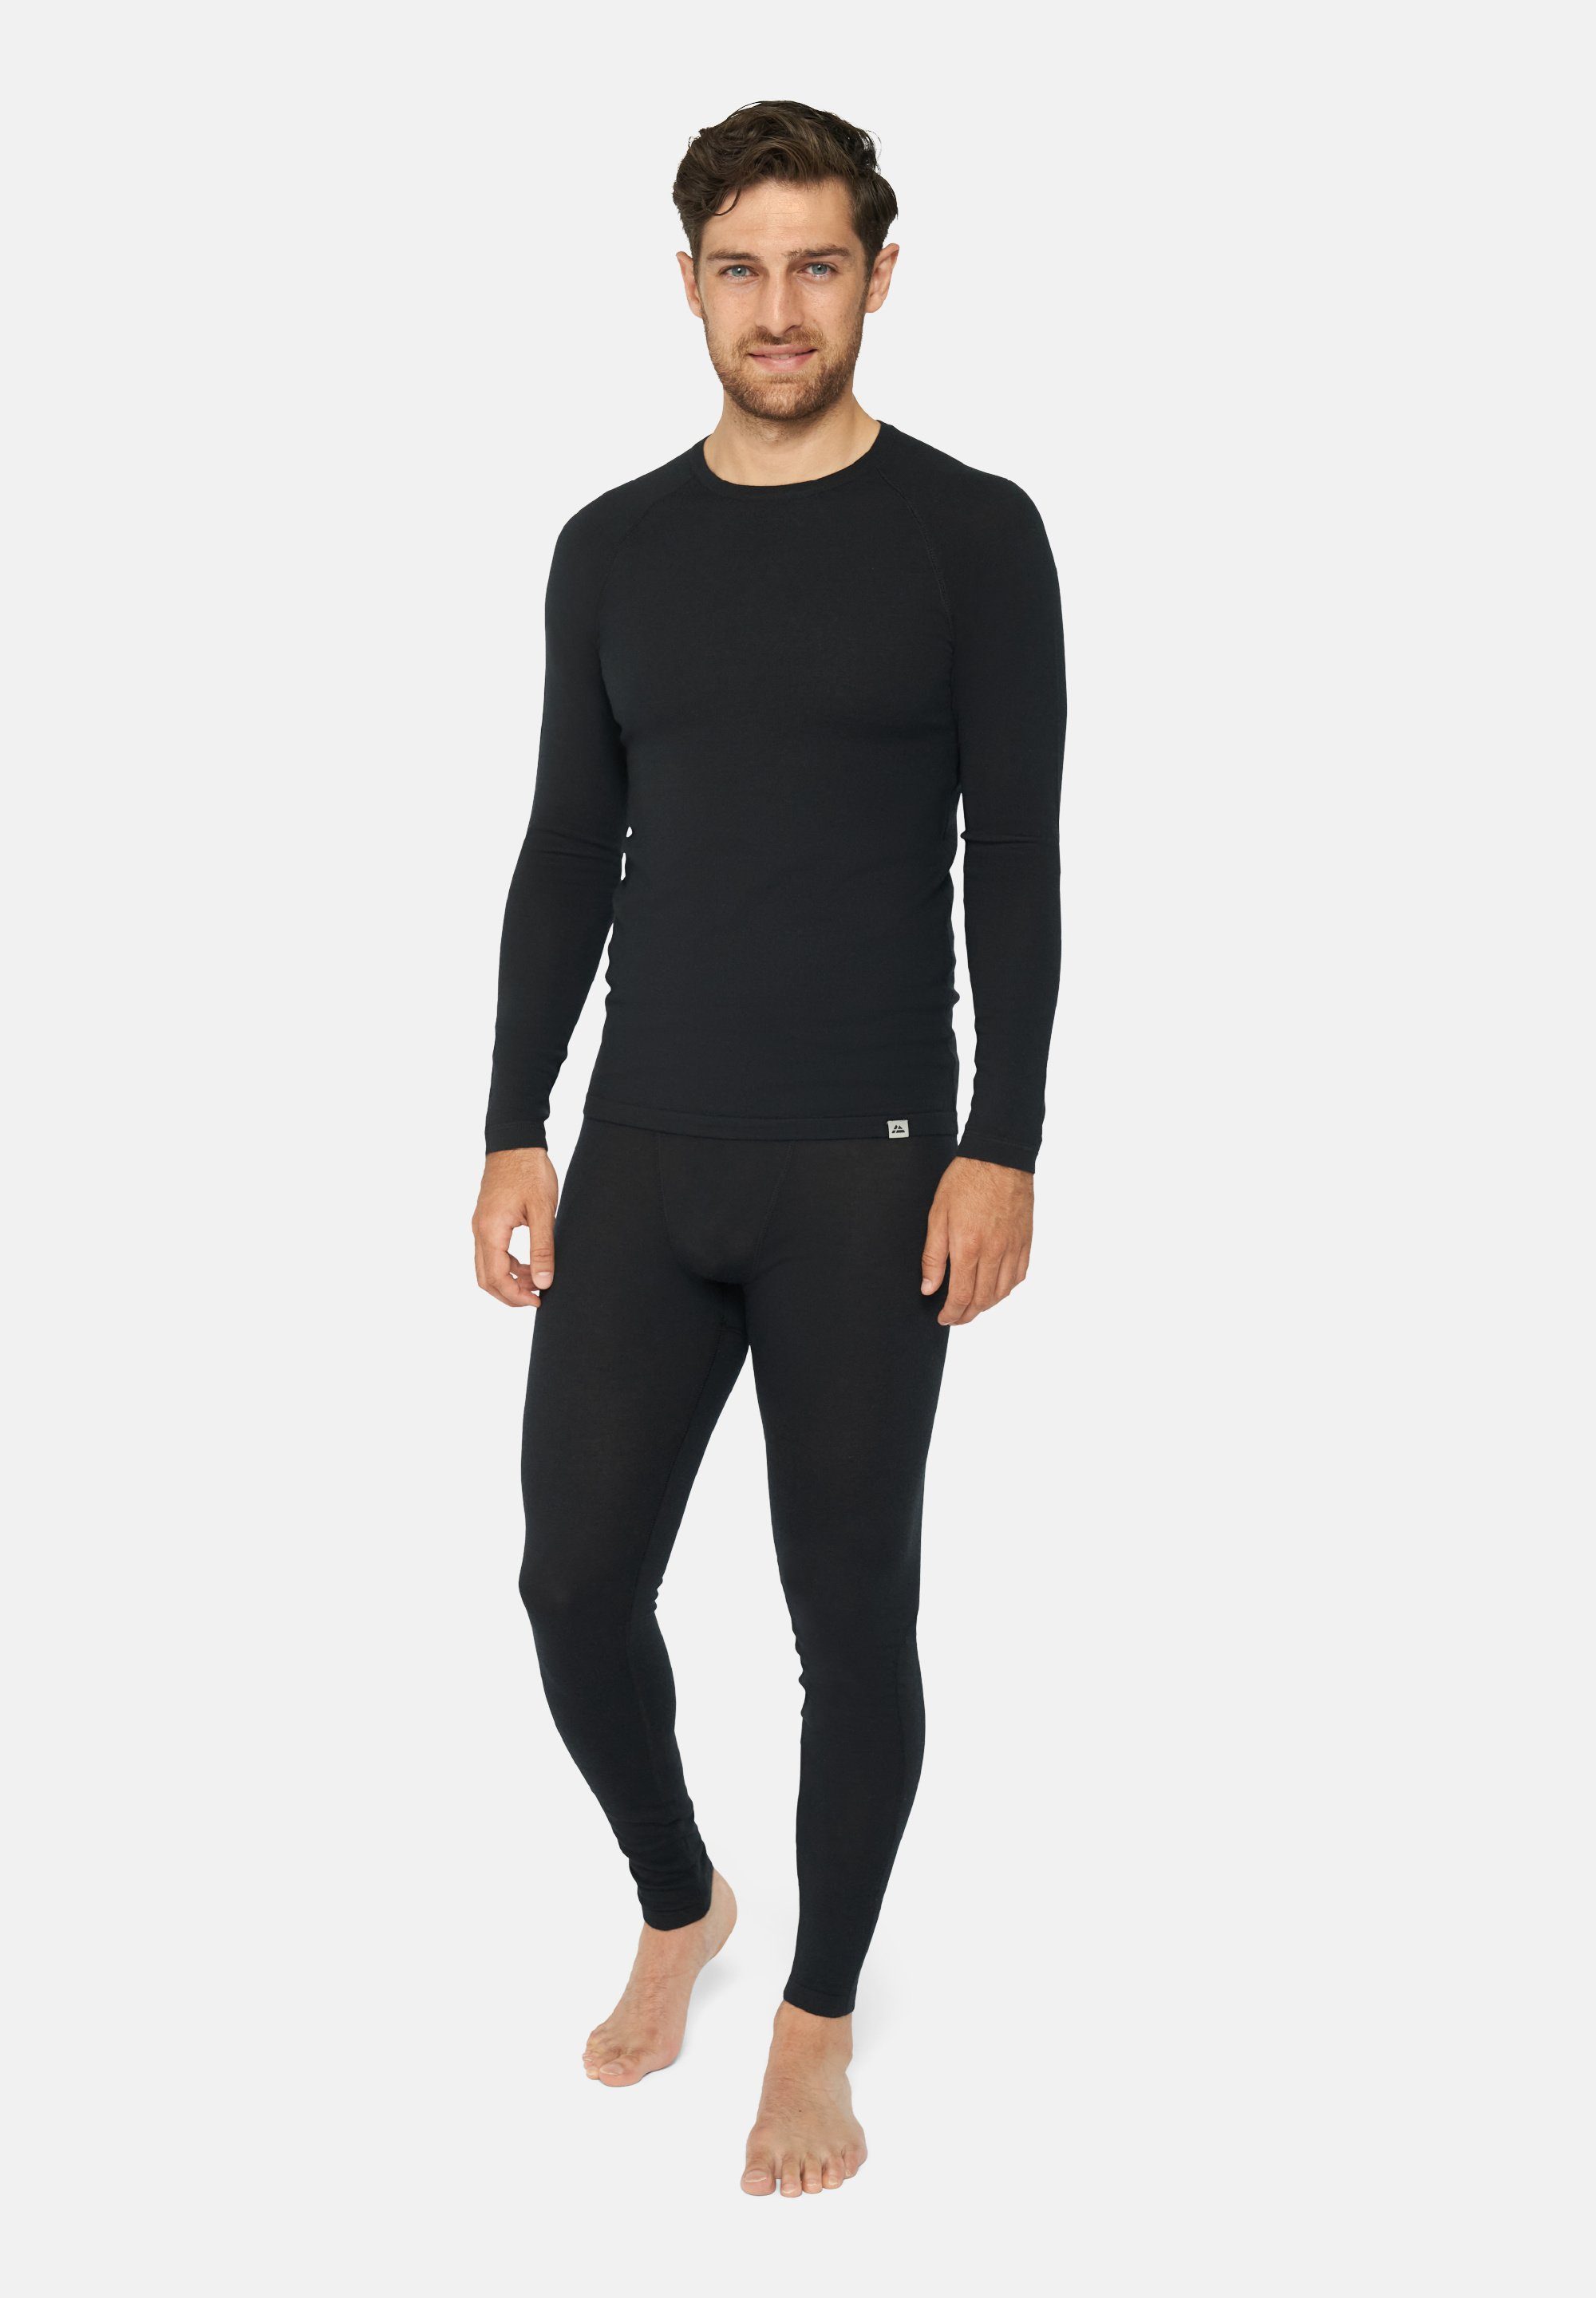 DANISH ENDURANCE Thermounterhemd Shirt für Merino schwarz Hose, Herren Langarm Set Thermo-Unterwäsche & Temperaturregulierend